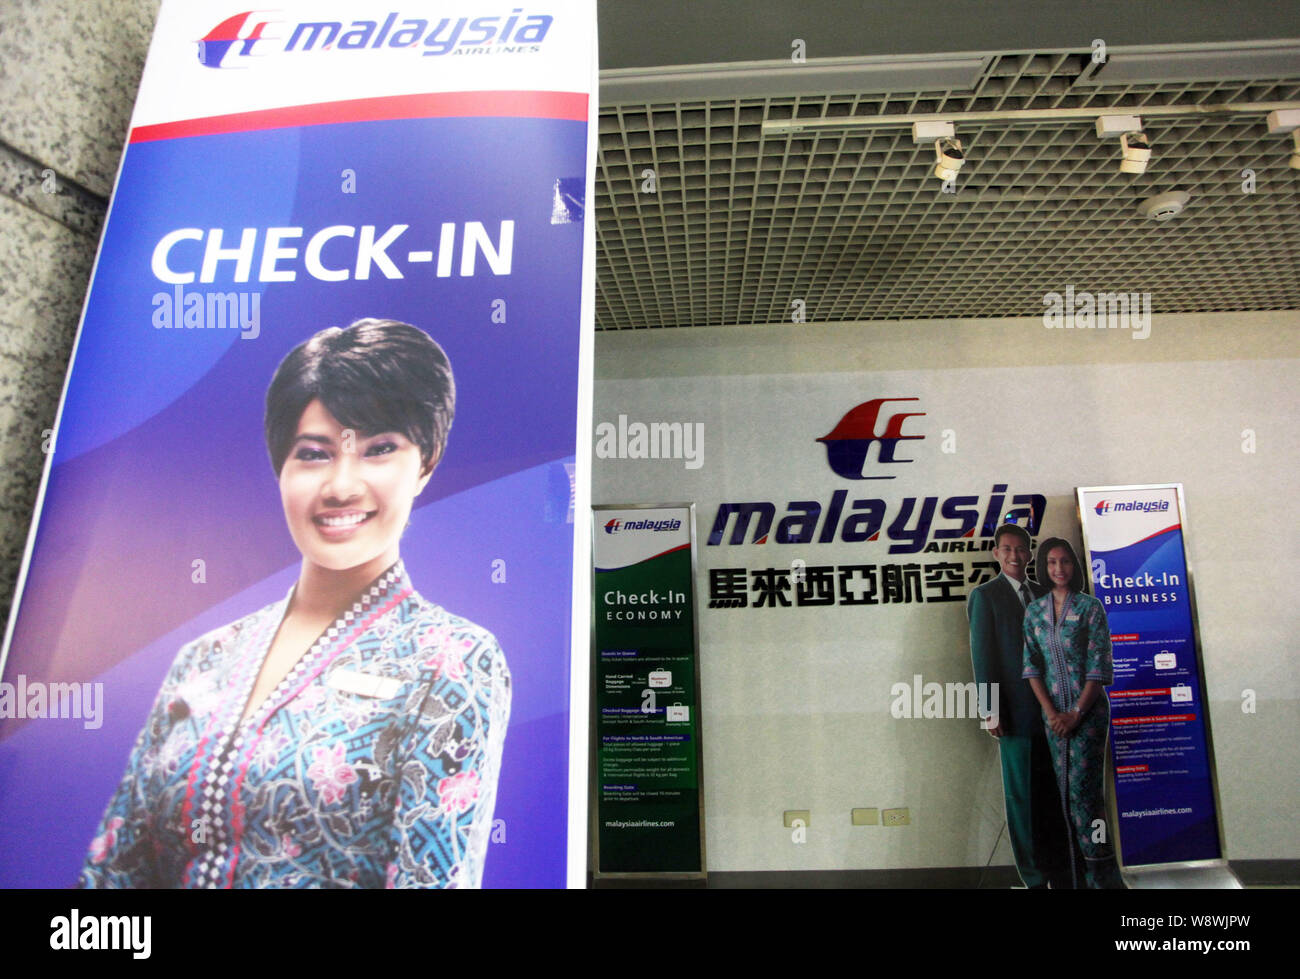 --FILE--Check-in cartelli di indicazione della Malaysia Airlines sono visti presso l'Aeroporto Internazionale di Kaohsiung in Kaohsiung, Taiwan, 28 dicembre 2010. La fiducia Foto Stock